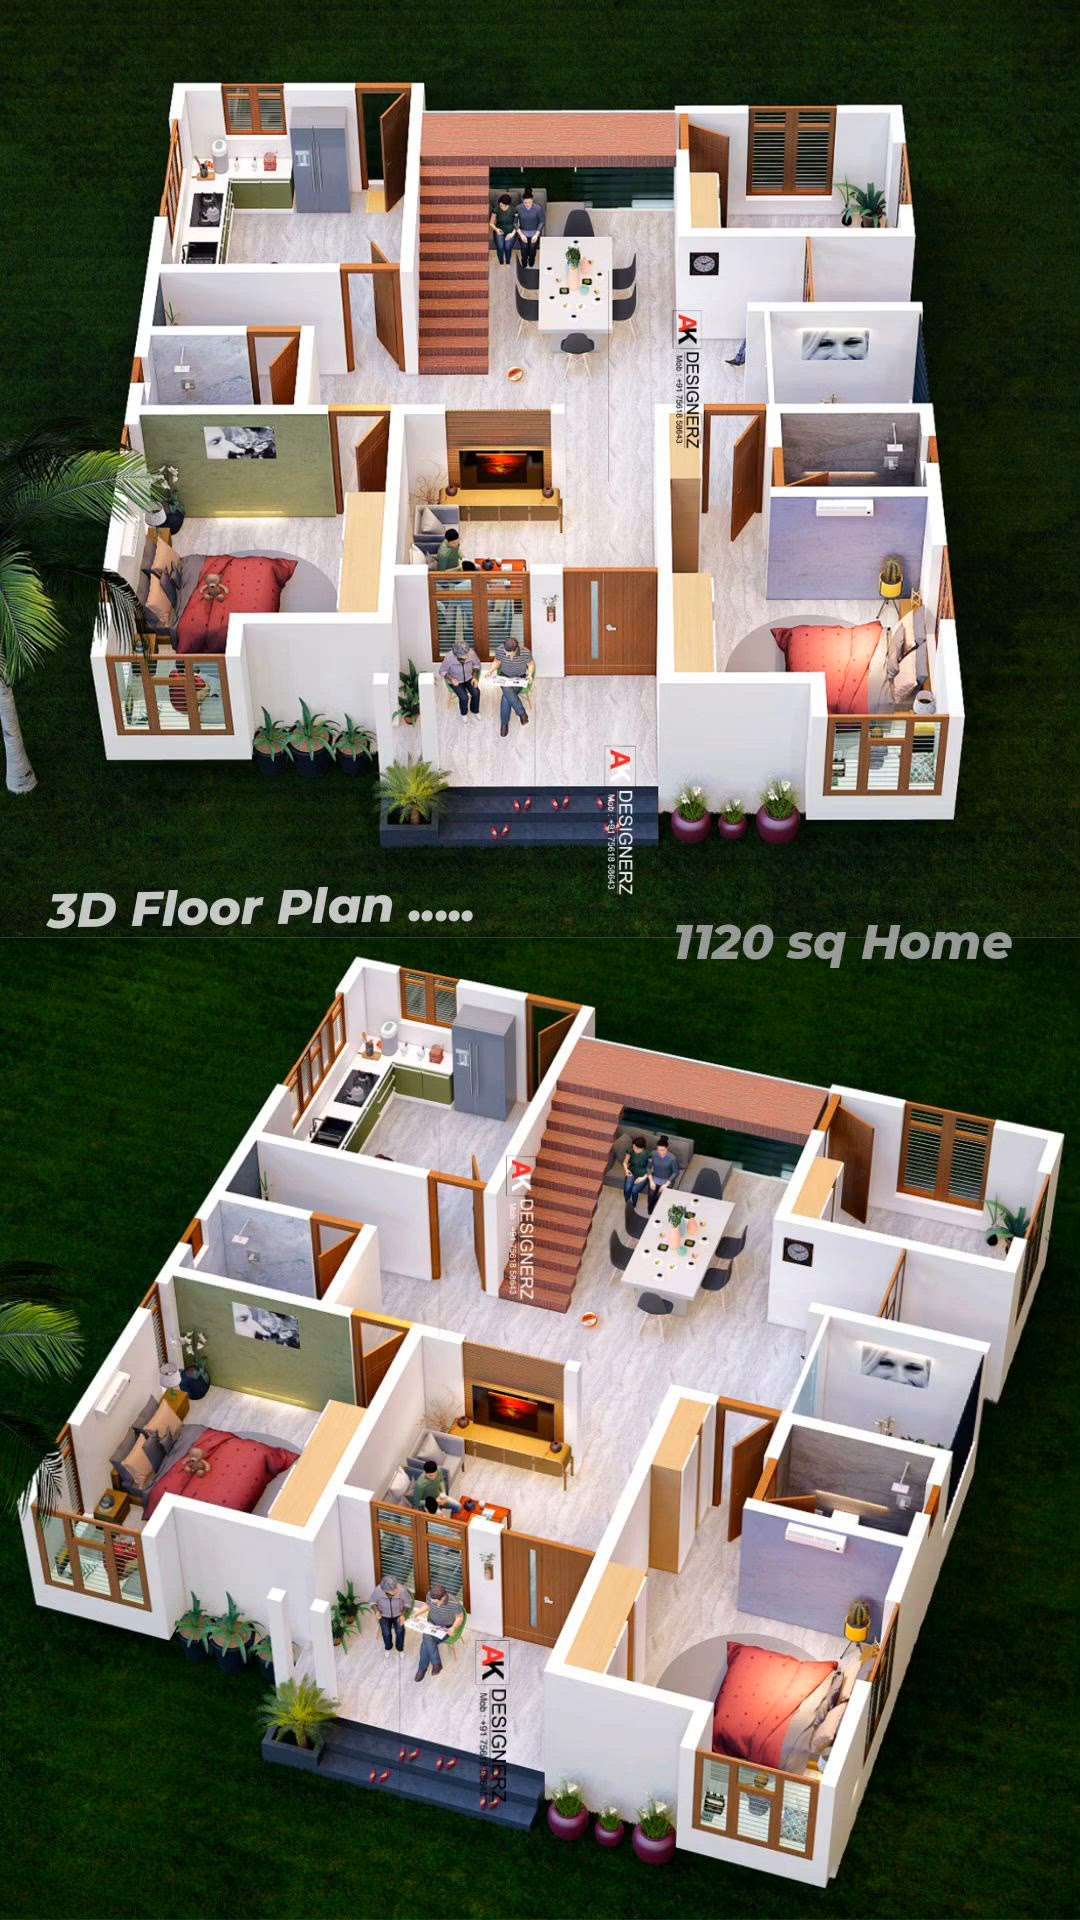 3D Floor Plan Design
😍😍😍😍😍😍😍